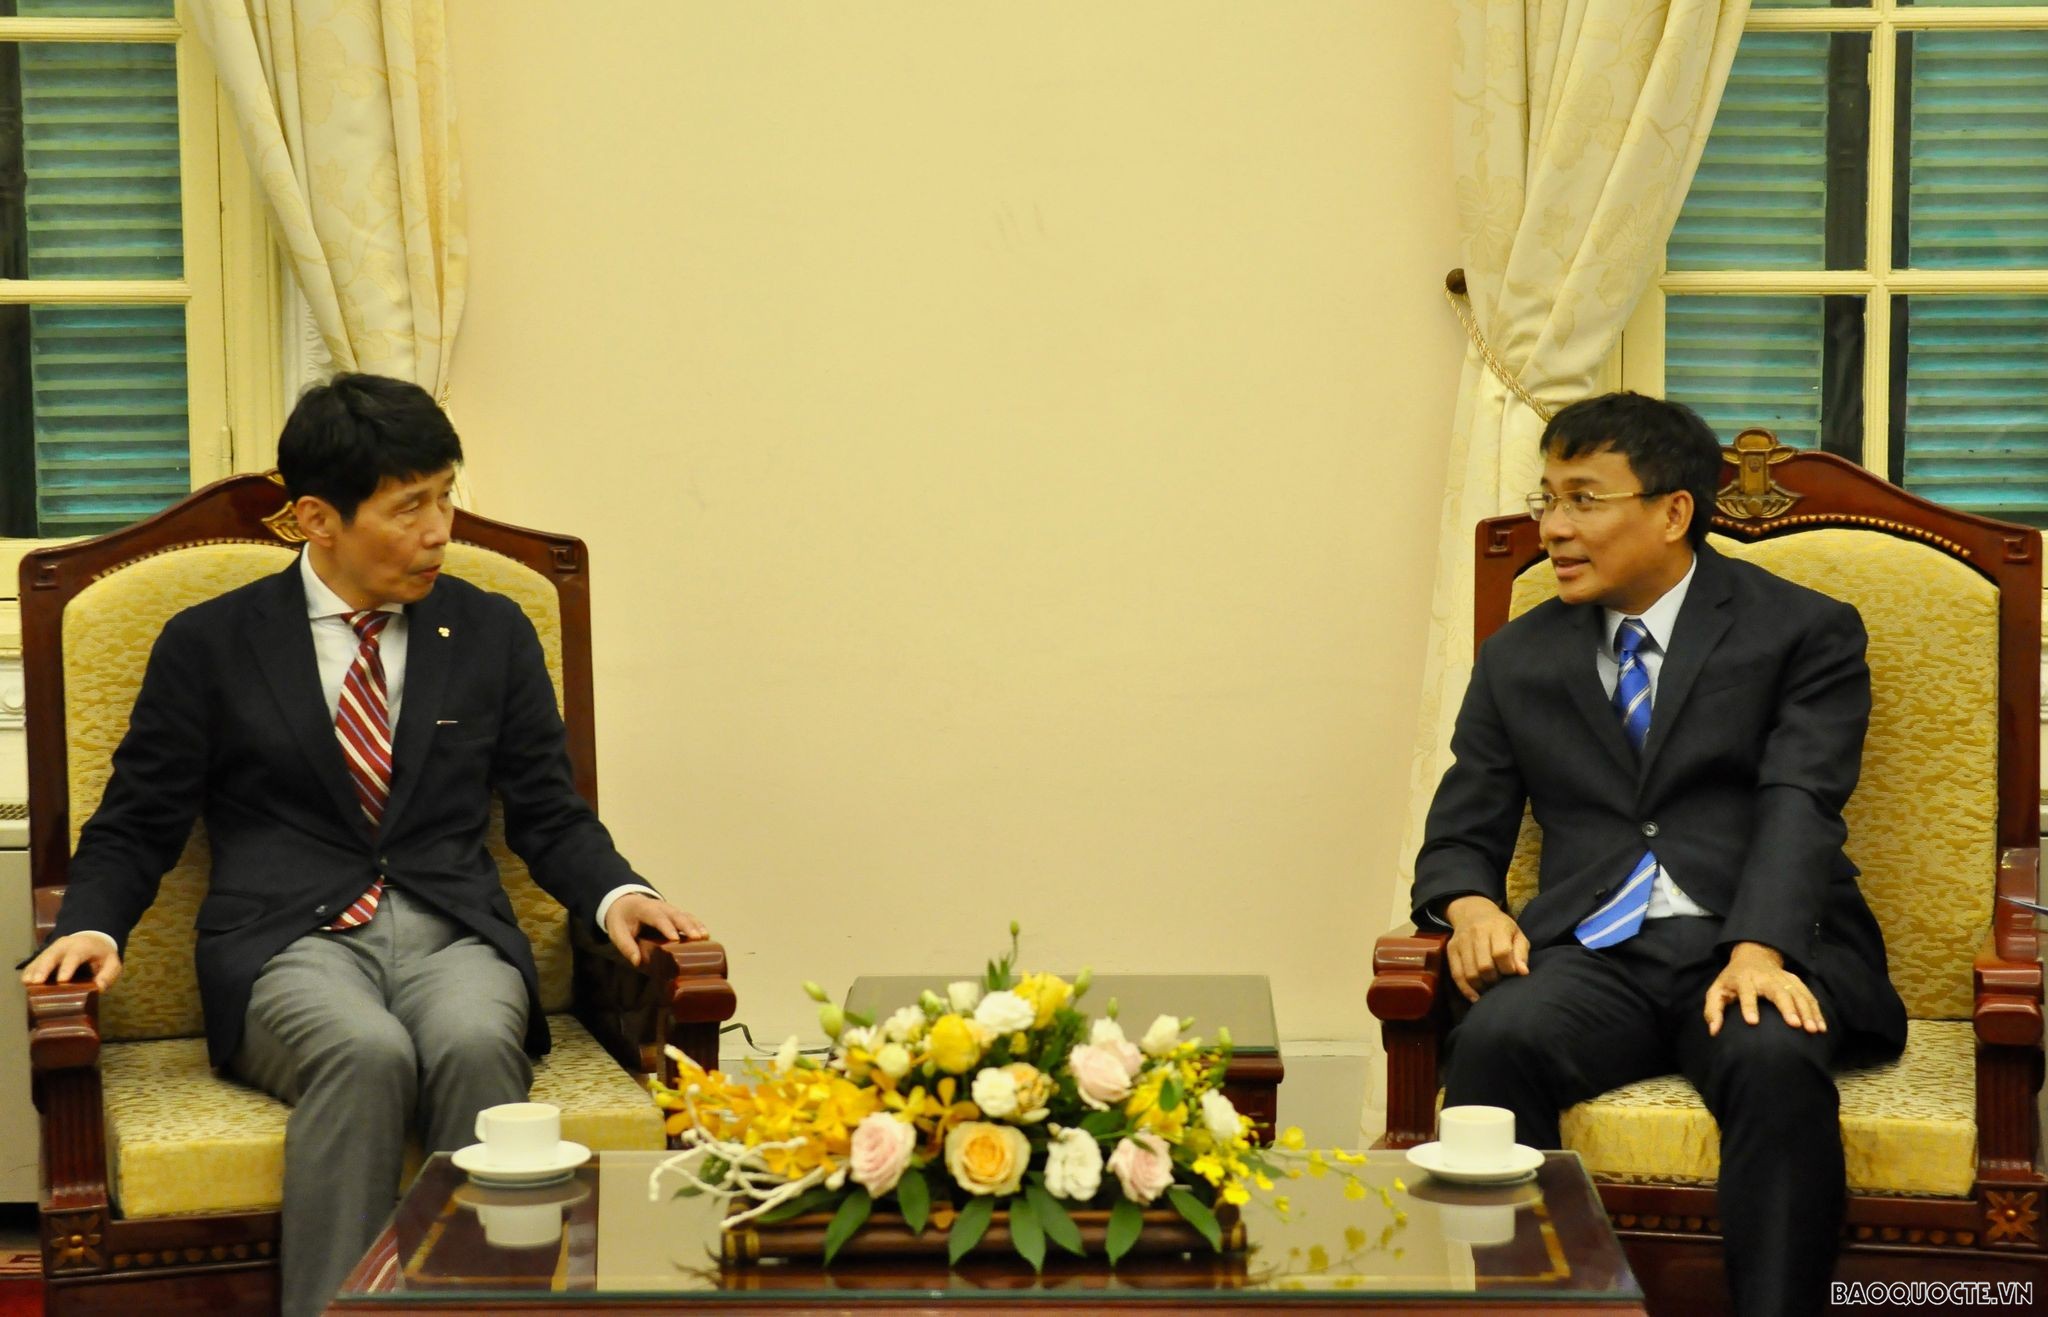 Ngày 3/8, tại Nhà khách Chính phủ, Thứ trưởng Thường trực Bộ Ngoại giao Nguyễn Minh Vũ đã tiếp đón và hội đàm với Thống đốc tỉnh Gunma Yamamoto Ichita. (Ảnh: Duy Quang)